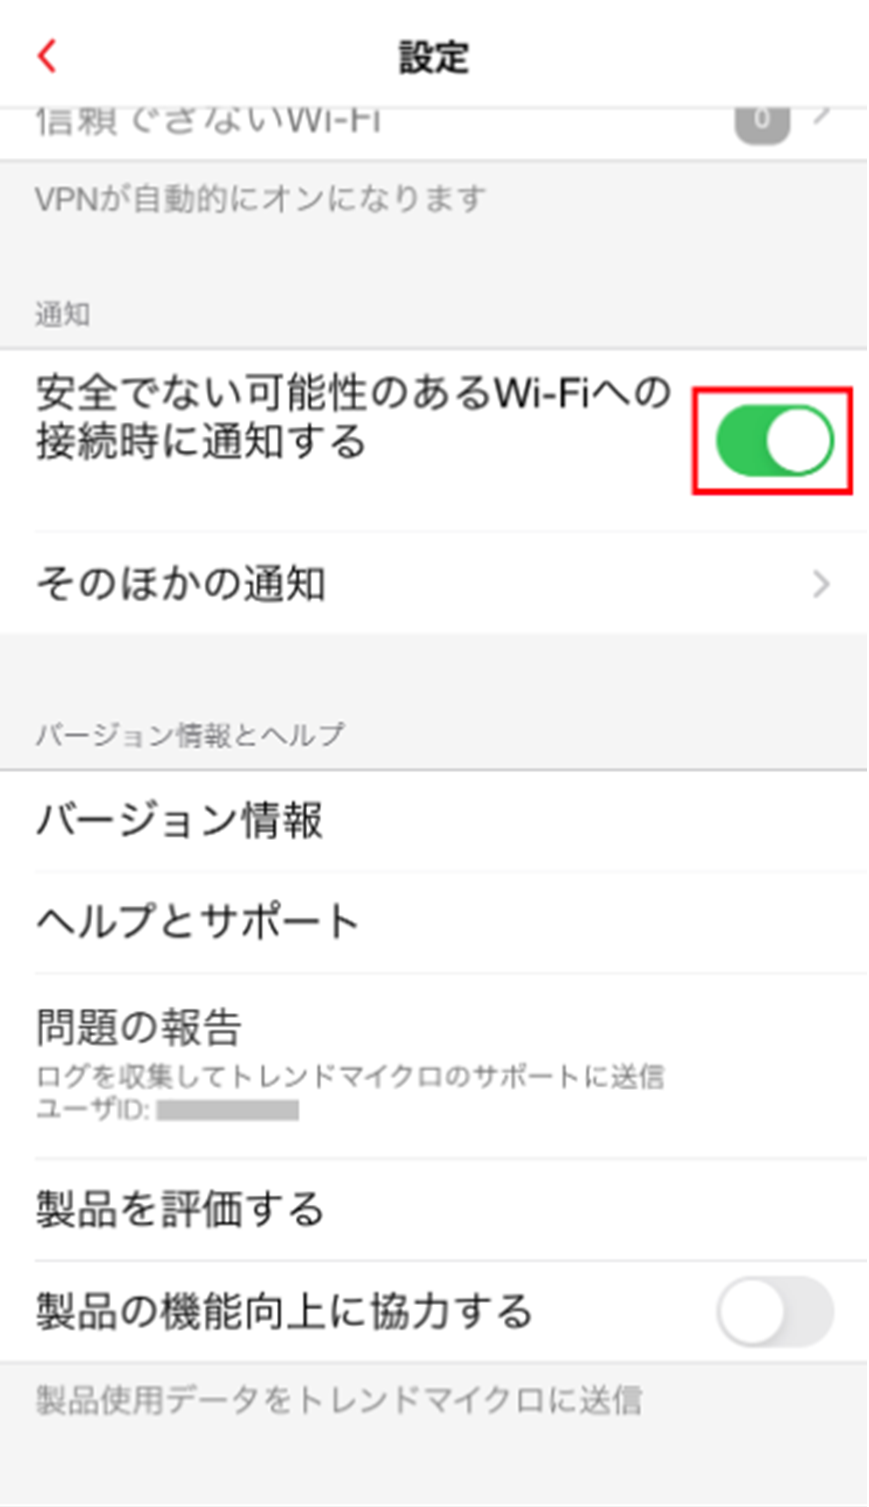 iOS版の「安全でない可能性のあるWi-Fiへの接続時に通知する」